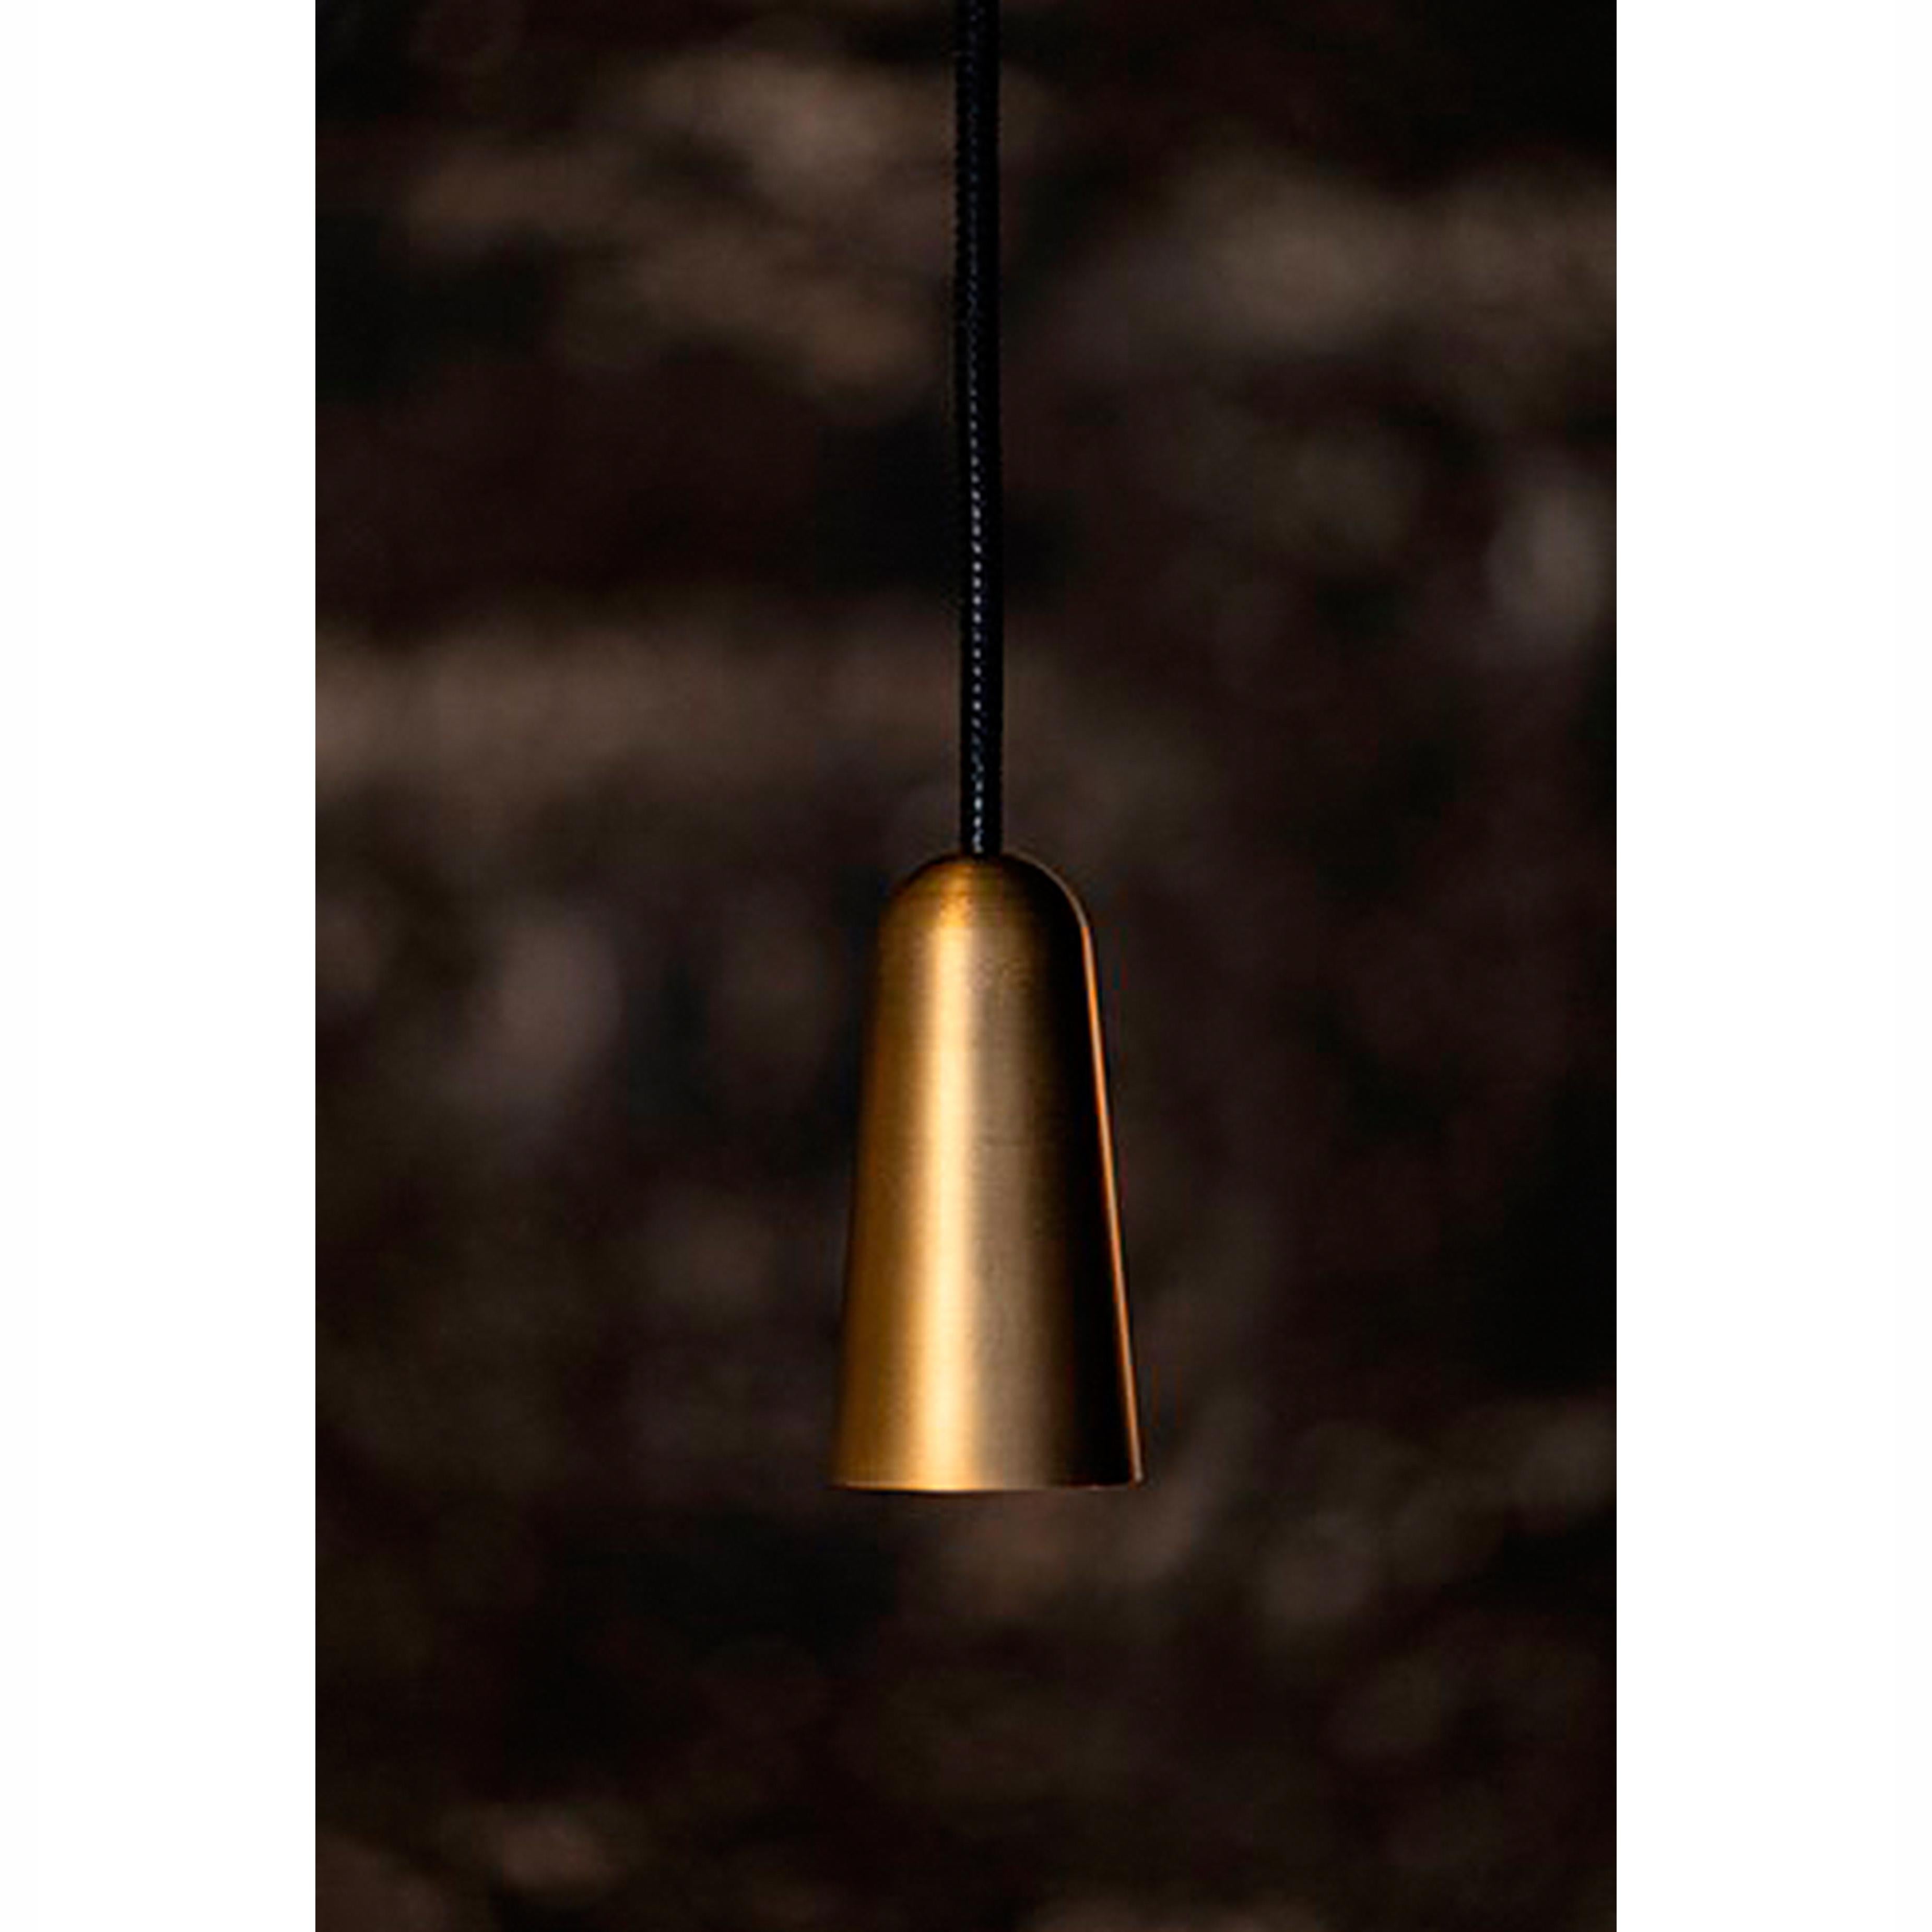 Contemporary Henrik Tengler 3493-6 Massiv Lamp by Konsthantverk For Sale